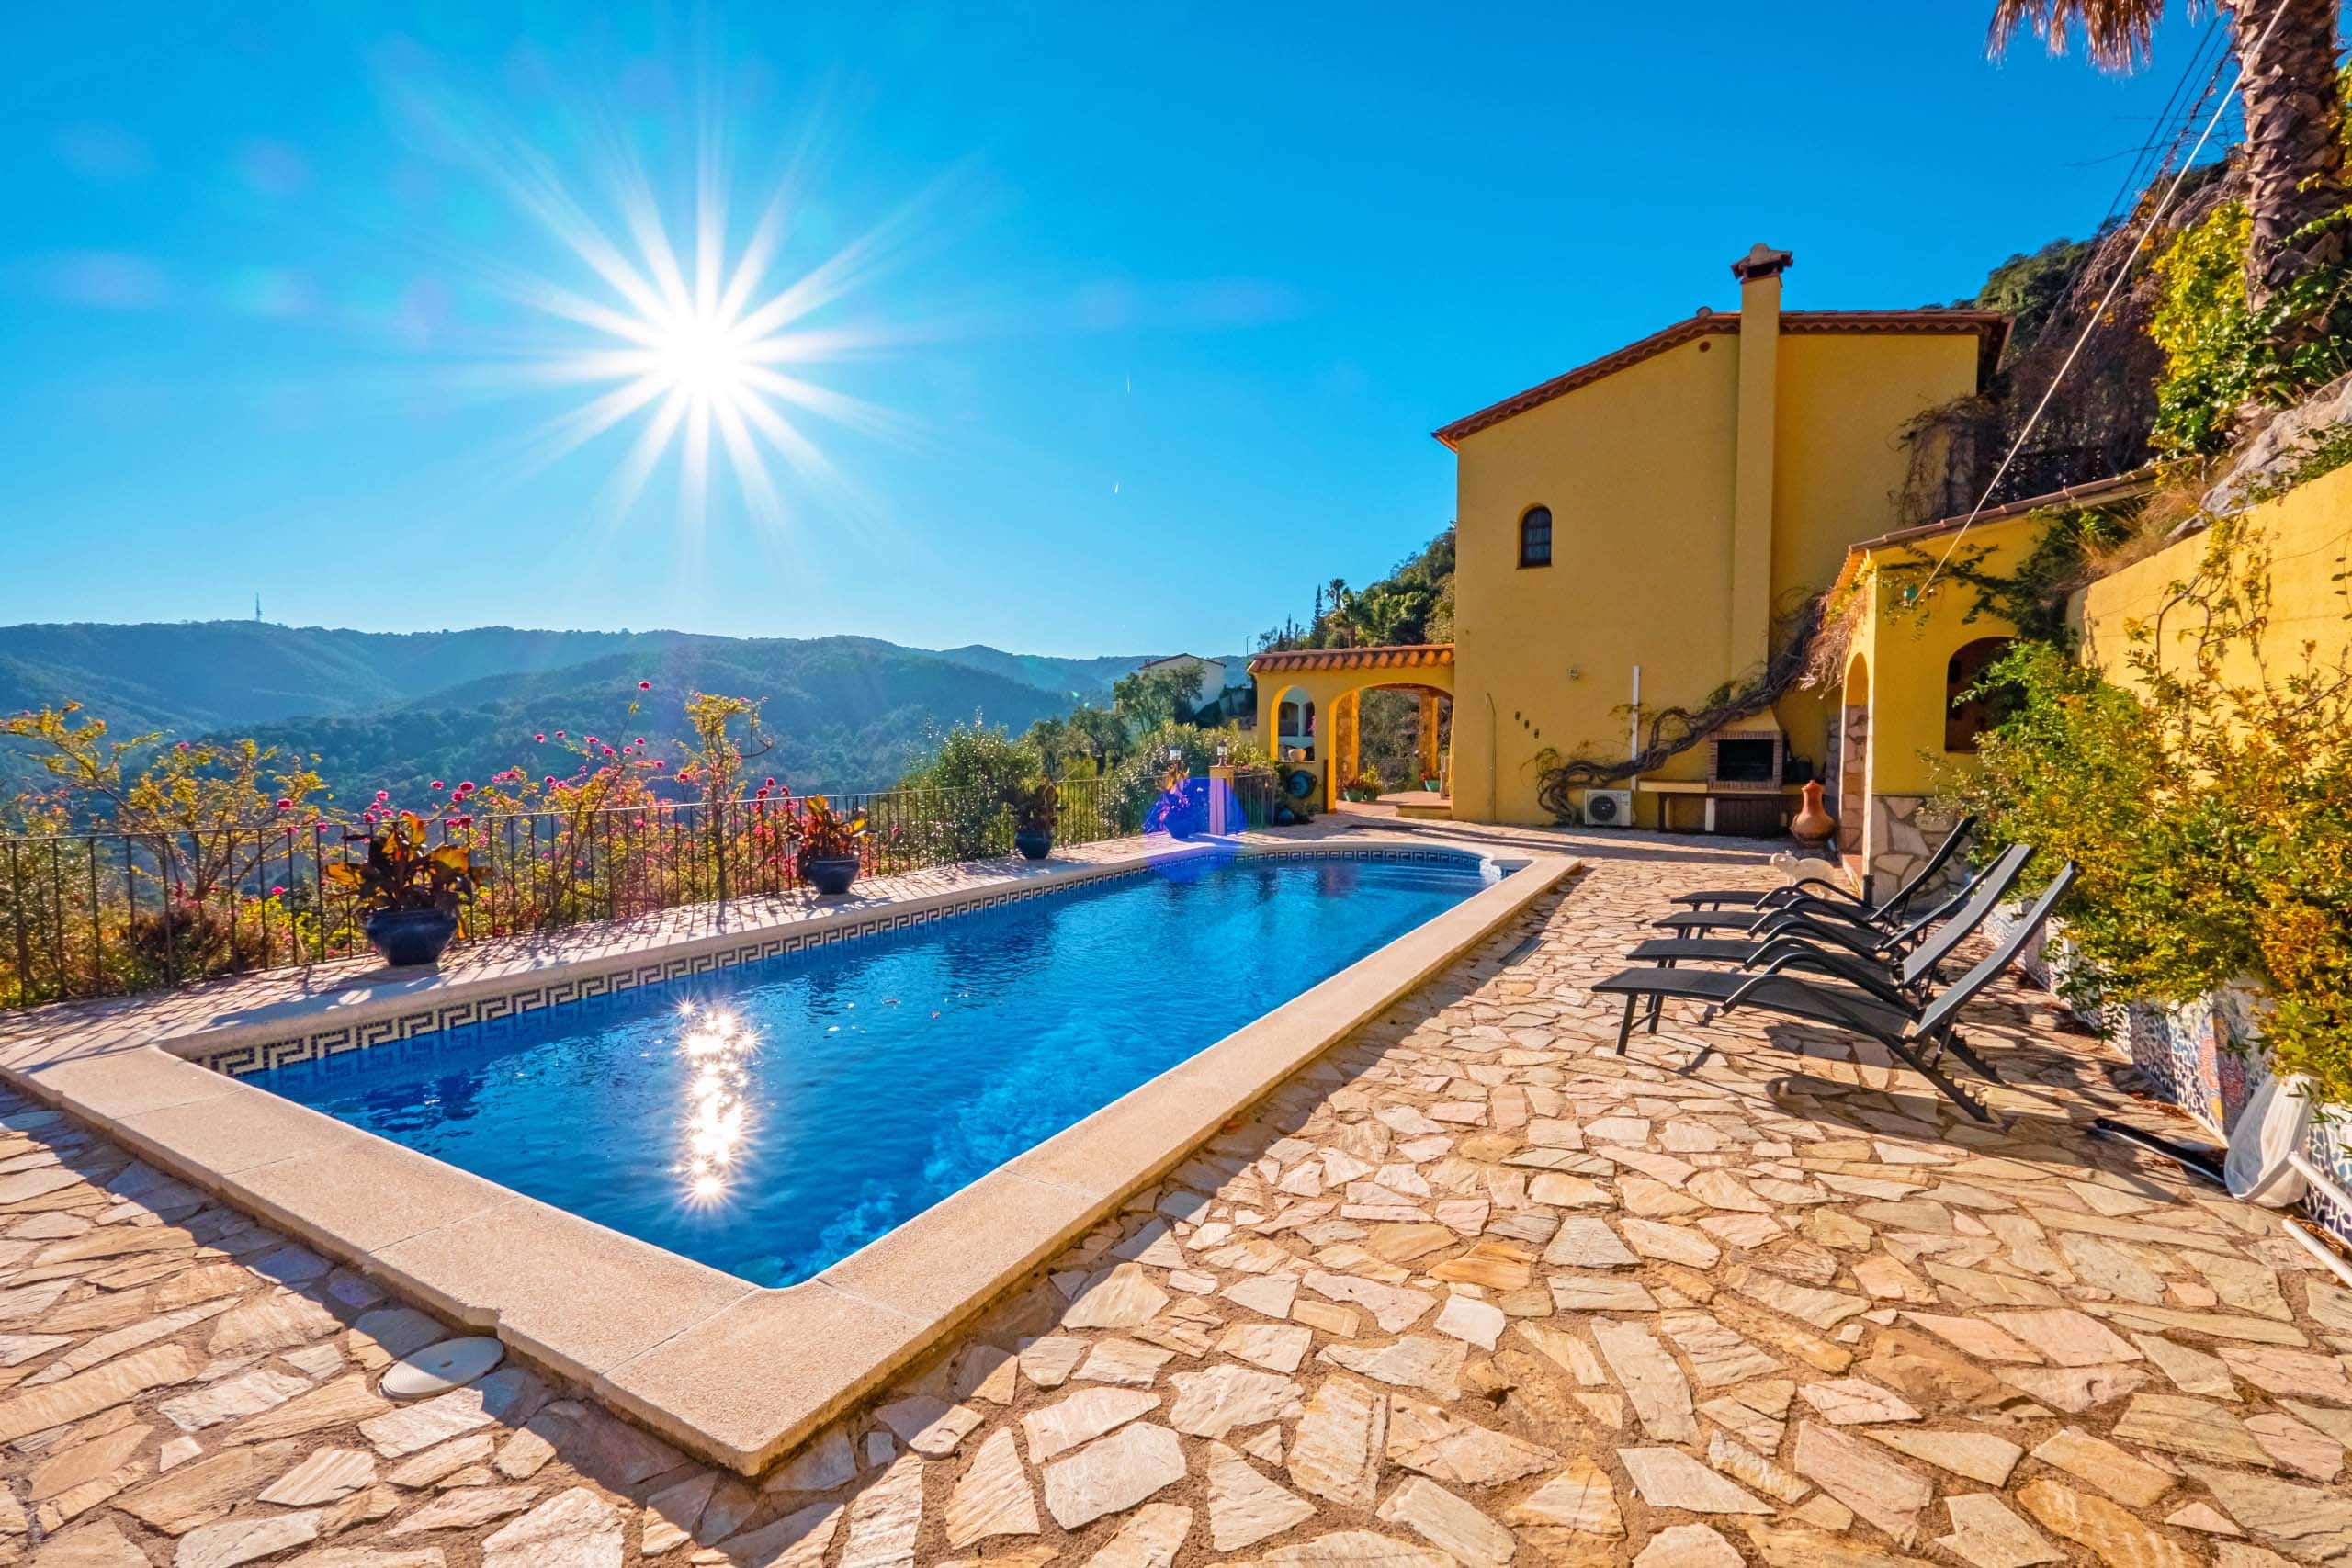 Hypotheek in Spanje huis kopen